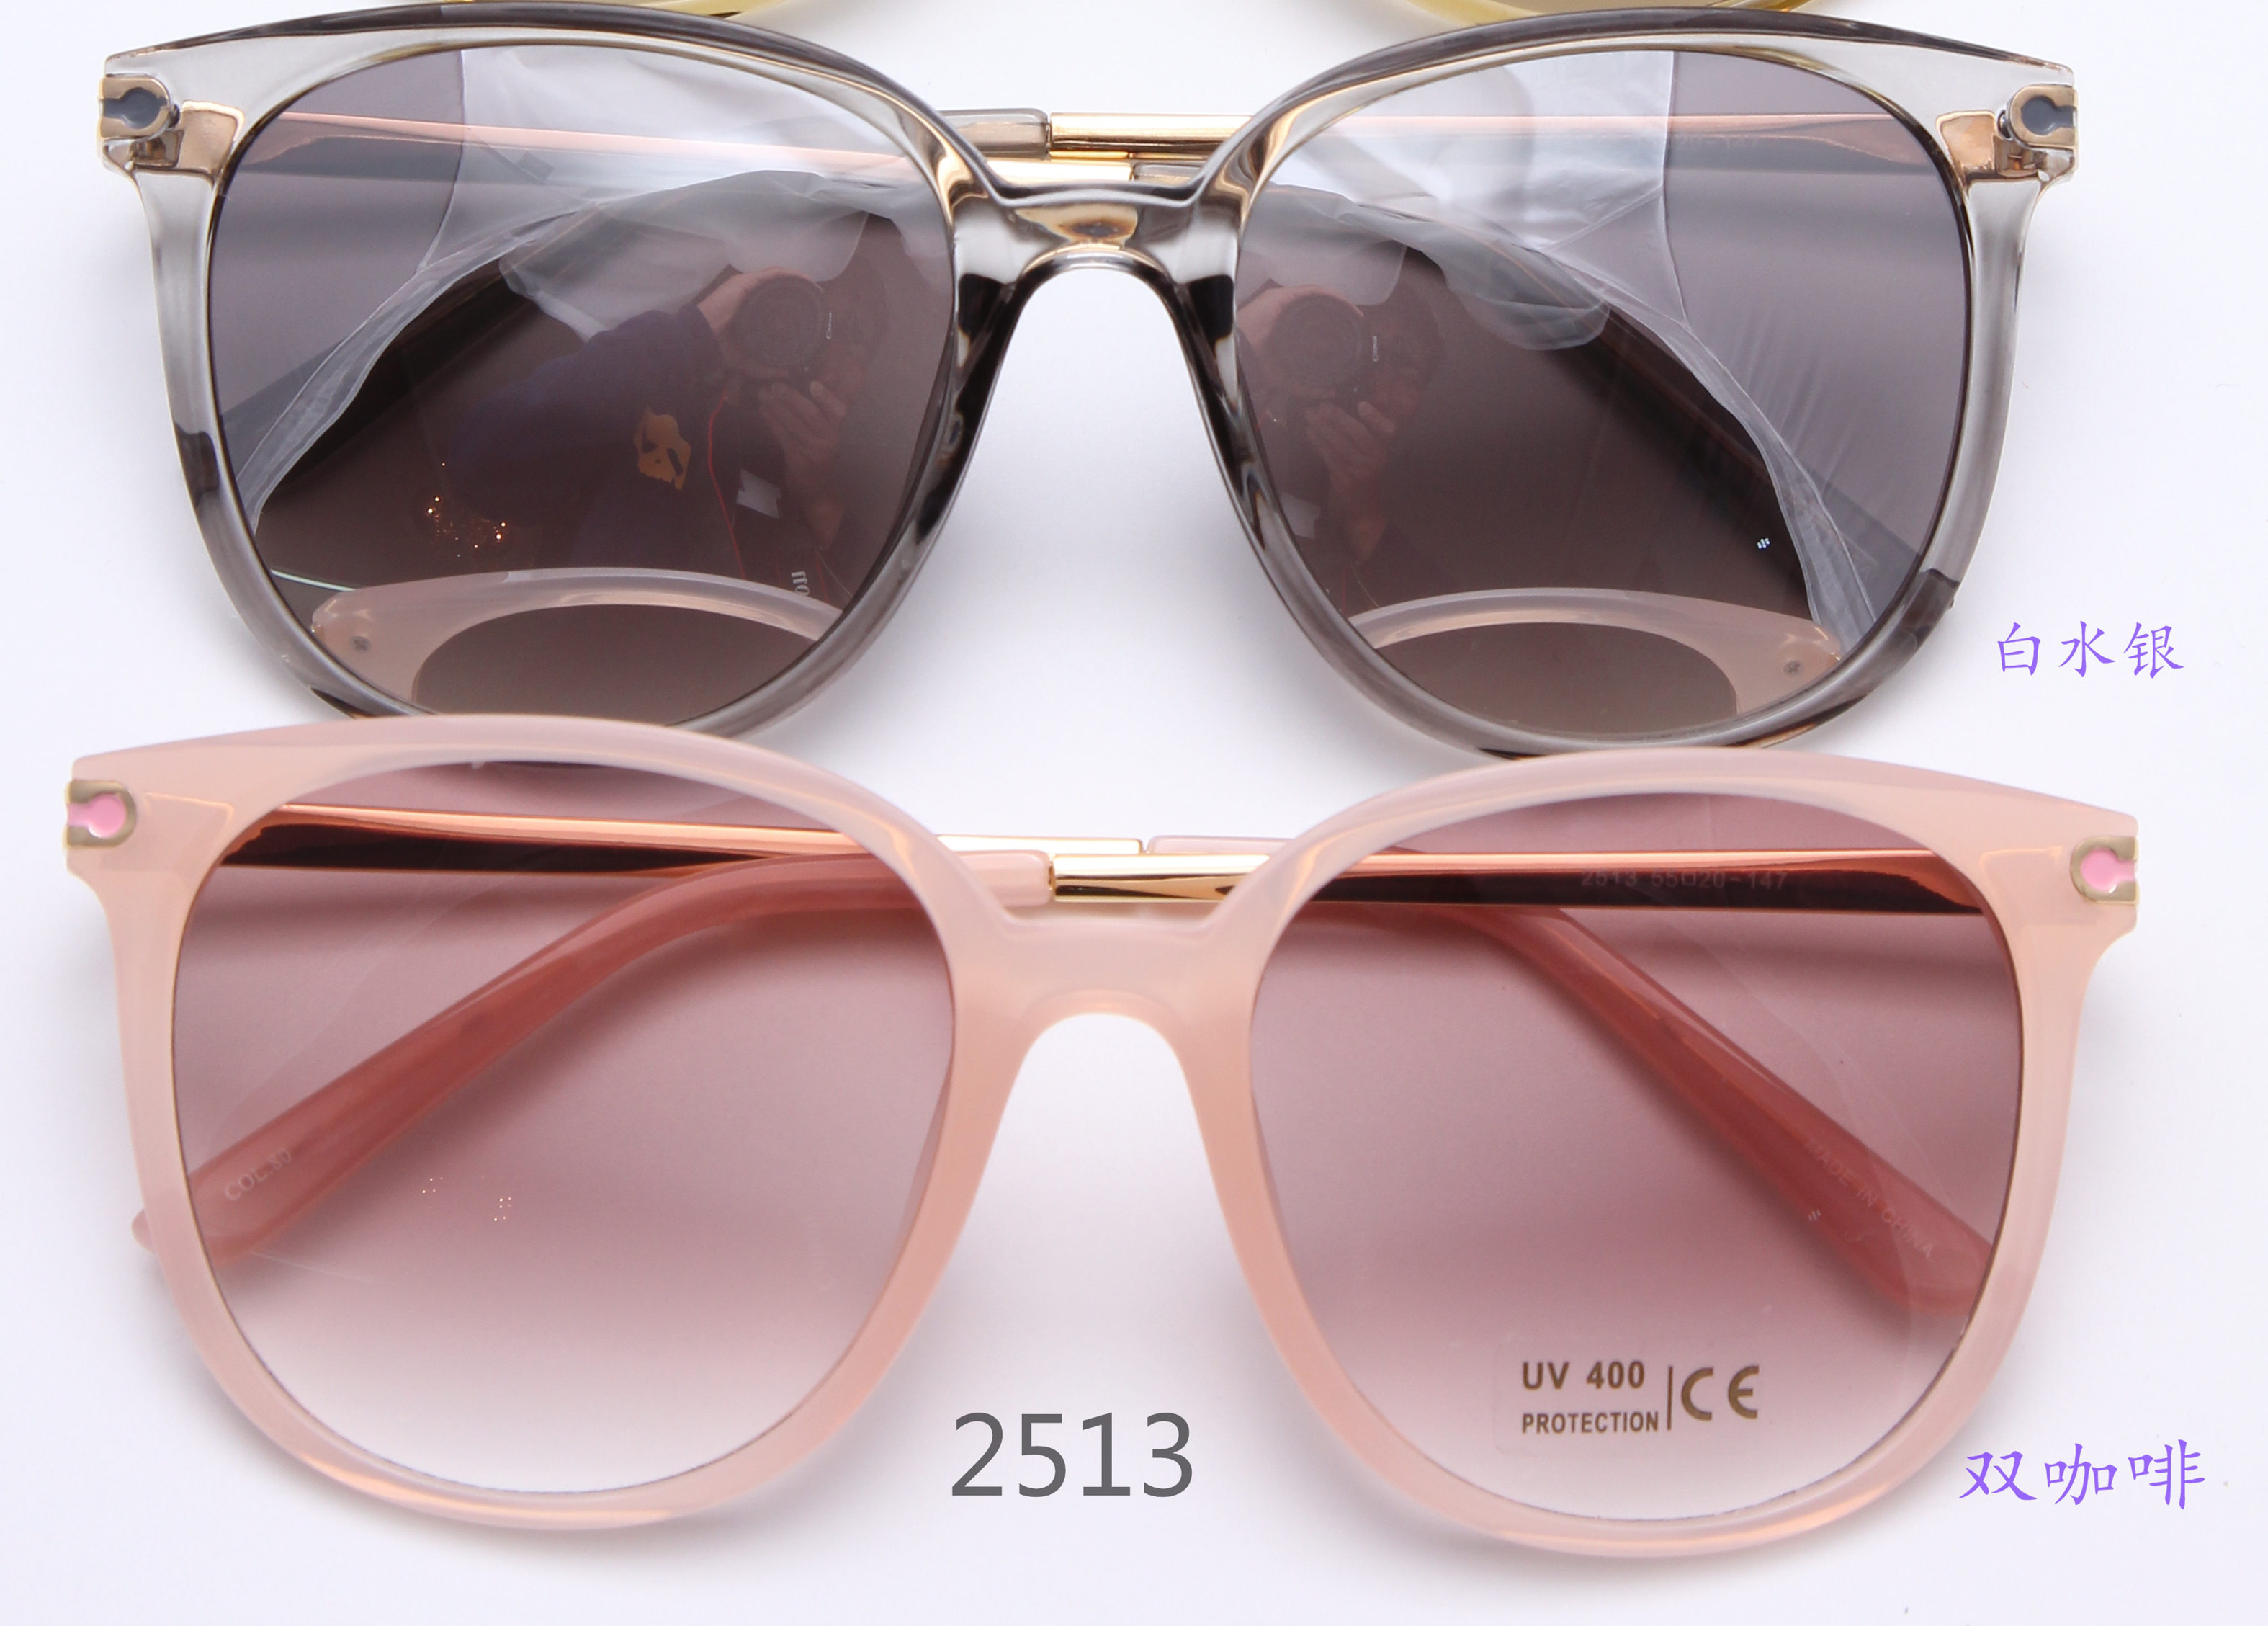 新款高档时尚太阳镜UV400镜片防紫外线眼镜防晒镜图